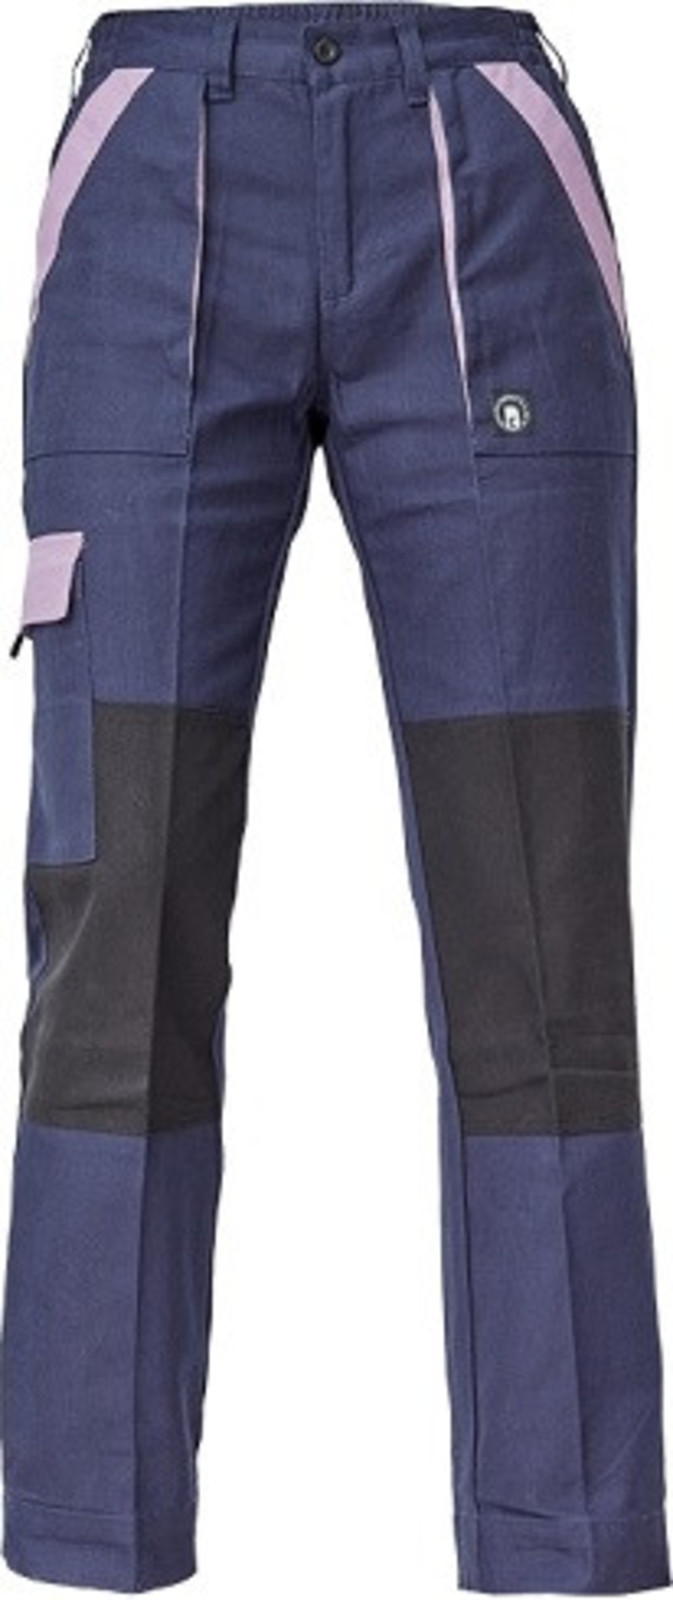 Dámske bavlnené montérky Cerva Max Neo Lady - veľkosť: 52, farba: navy/fialová